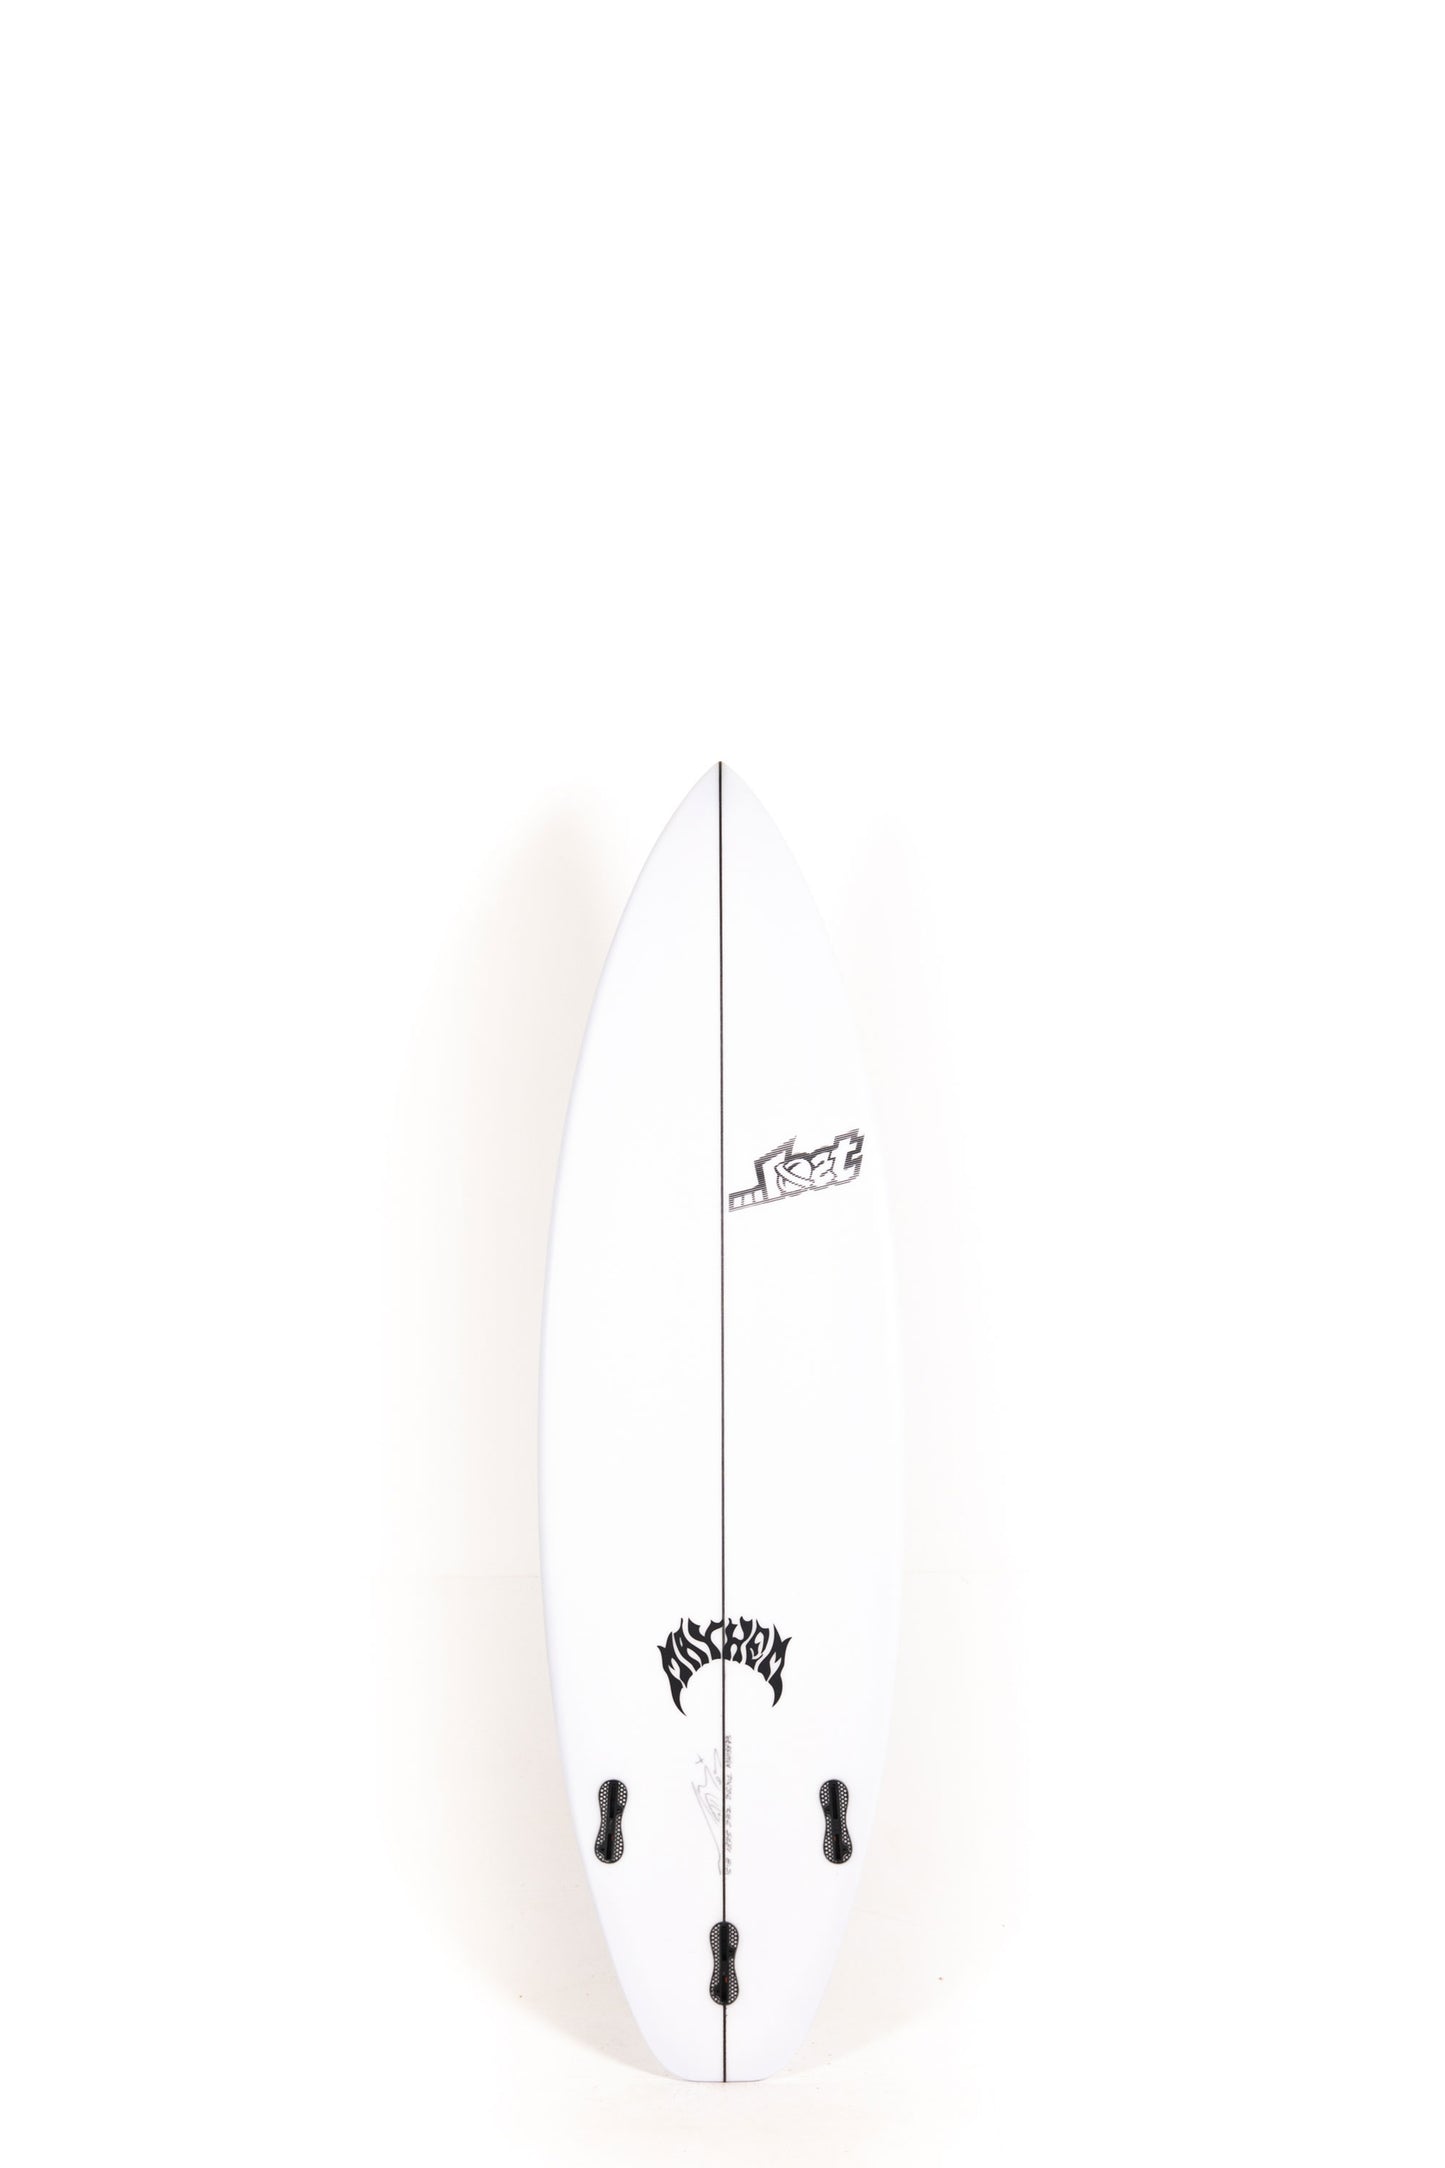 Pukas Surf Shop - Lost Surfboard - 3.0_STUB DRIVER by Matt Biolos - 5’8” x 18.75" x 2.30" - 26.26L - MH18873